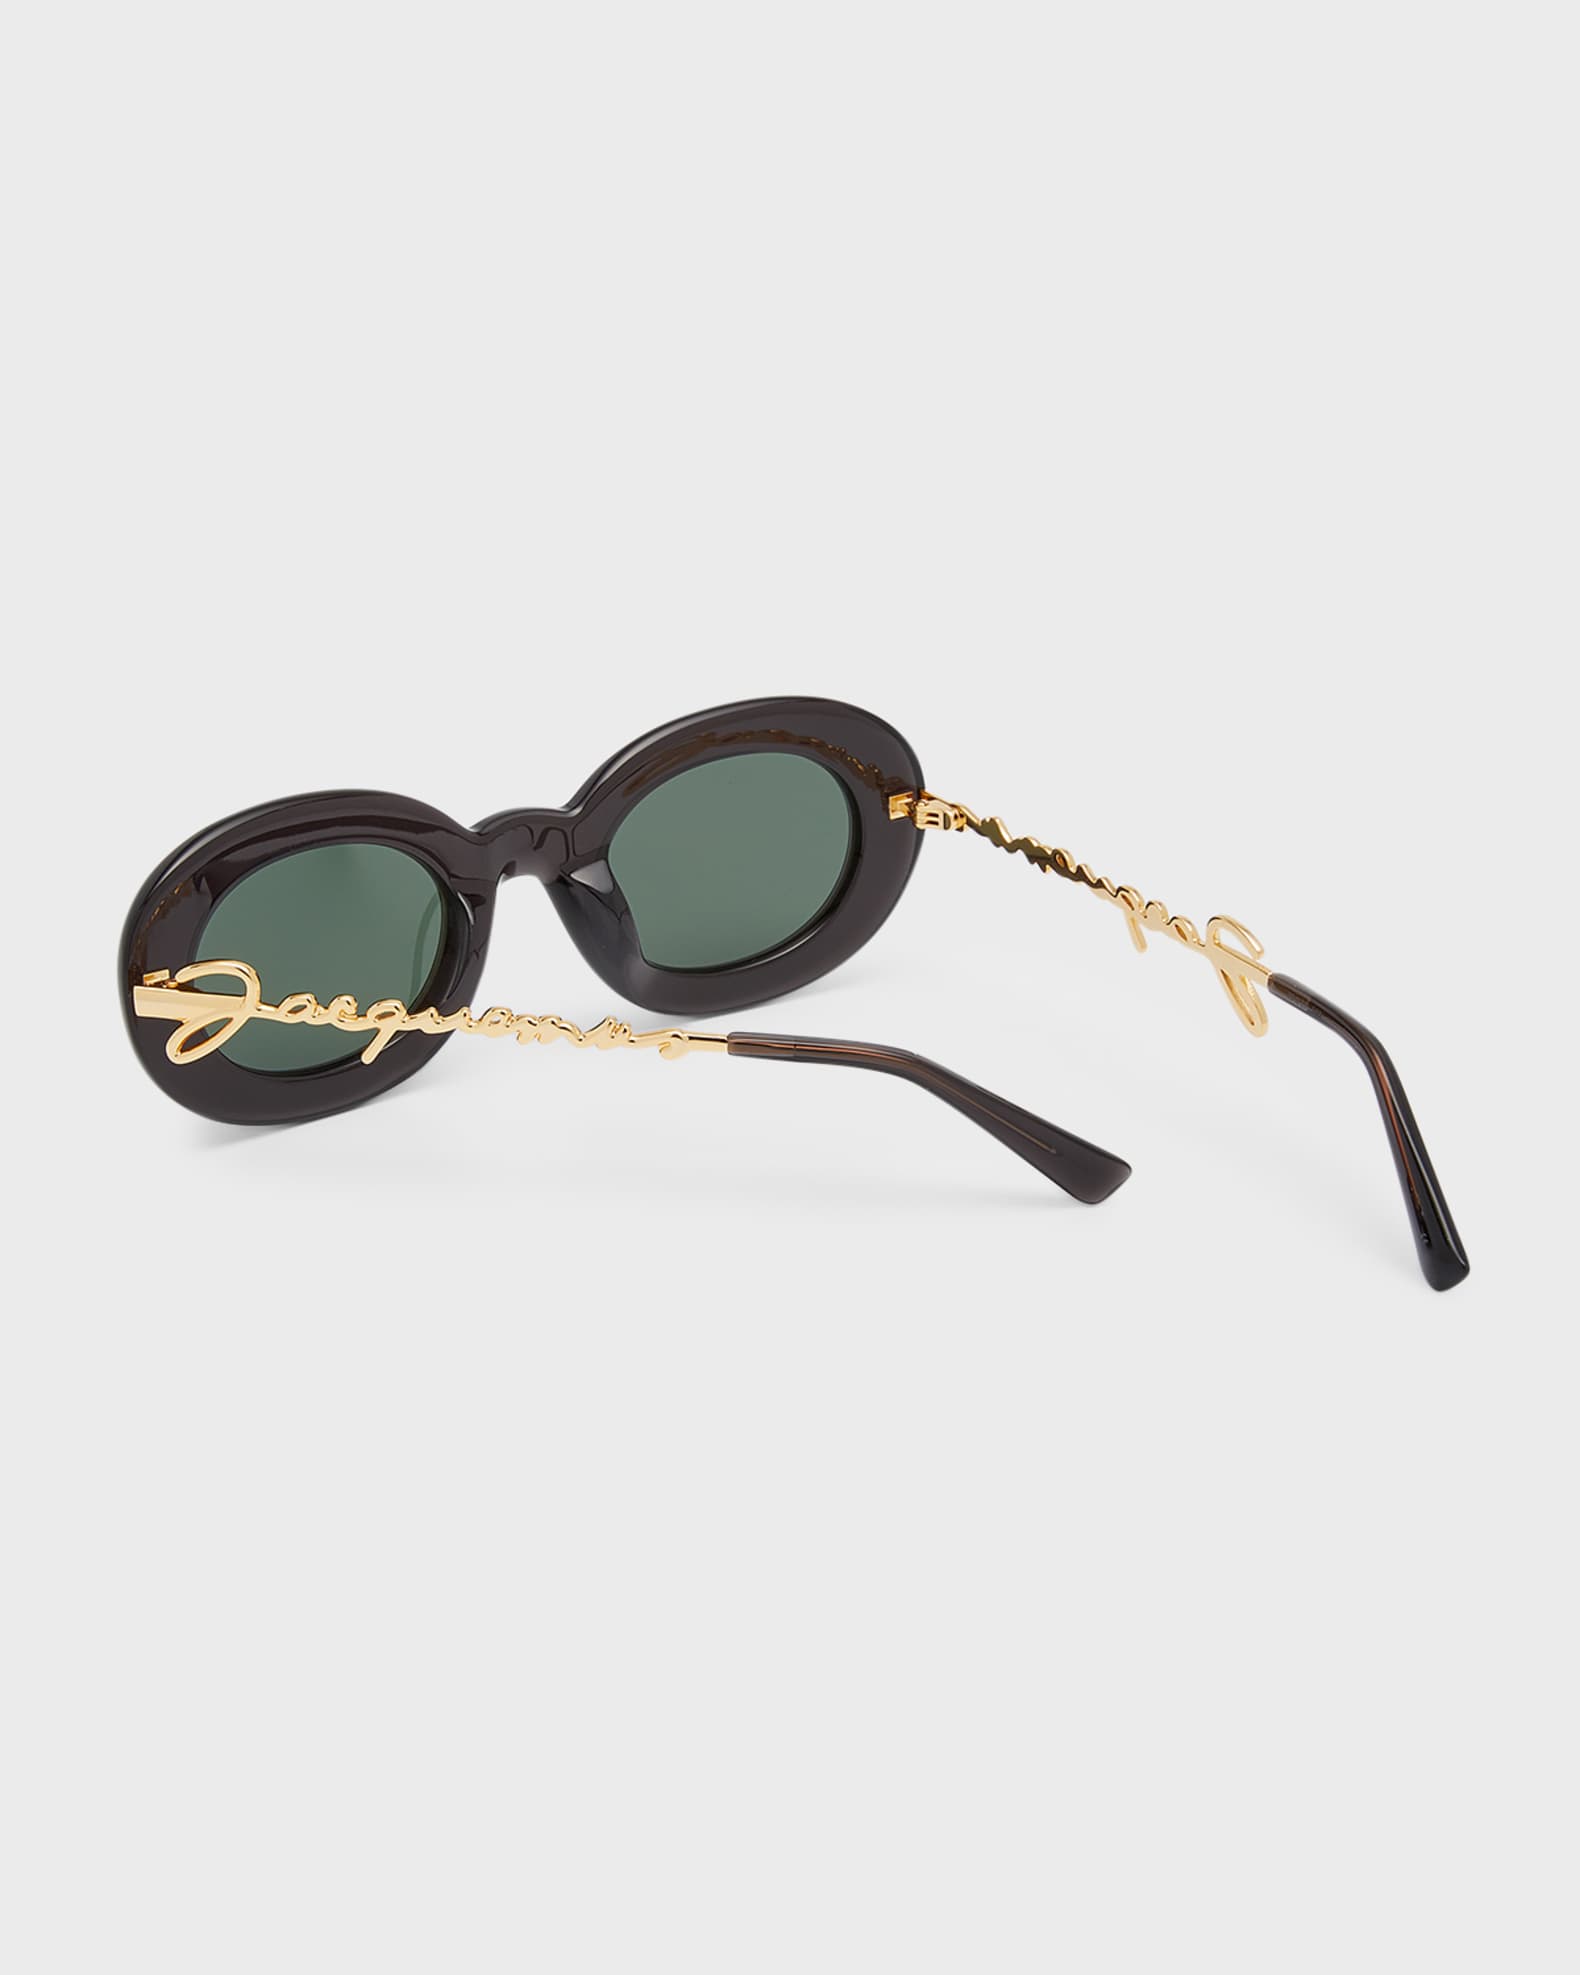 Jacquemus Les Lunettes Pralu Oval Acetate Sunglasses | Neiman Marcus